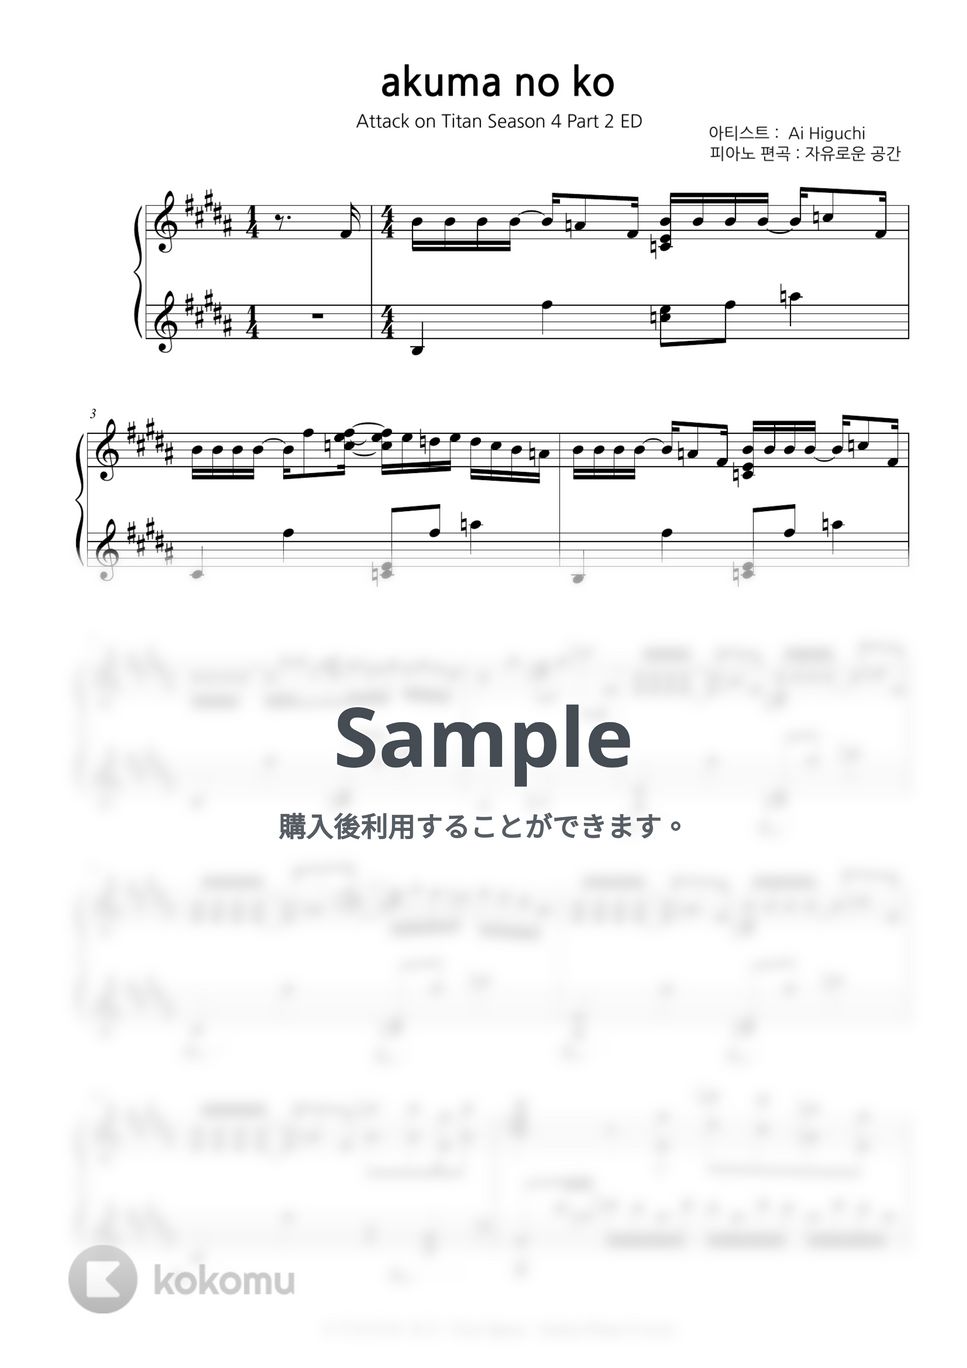 ヒグチアイ - Akuma no ko (進撃の巨人 OST) by Free Space / Anime Piano Covers